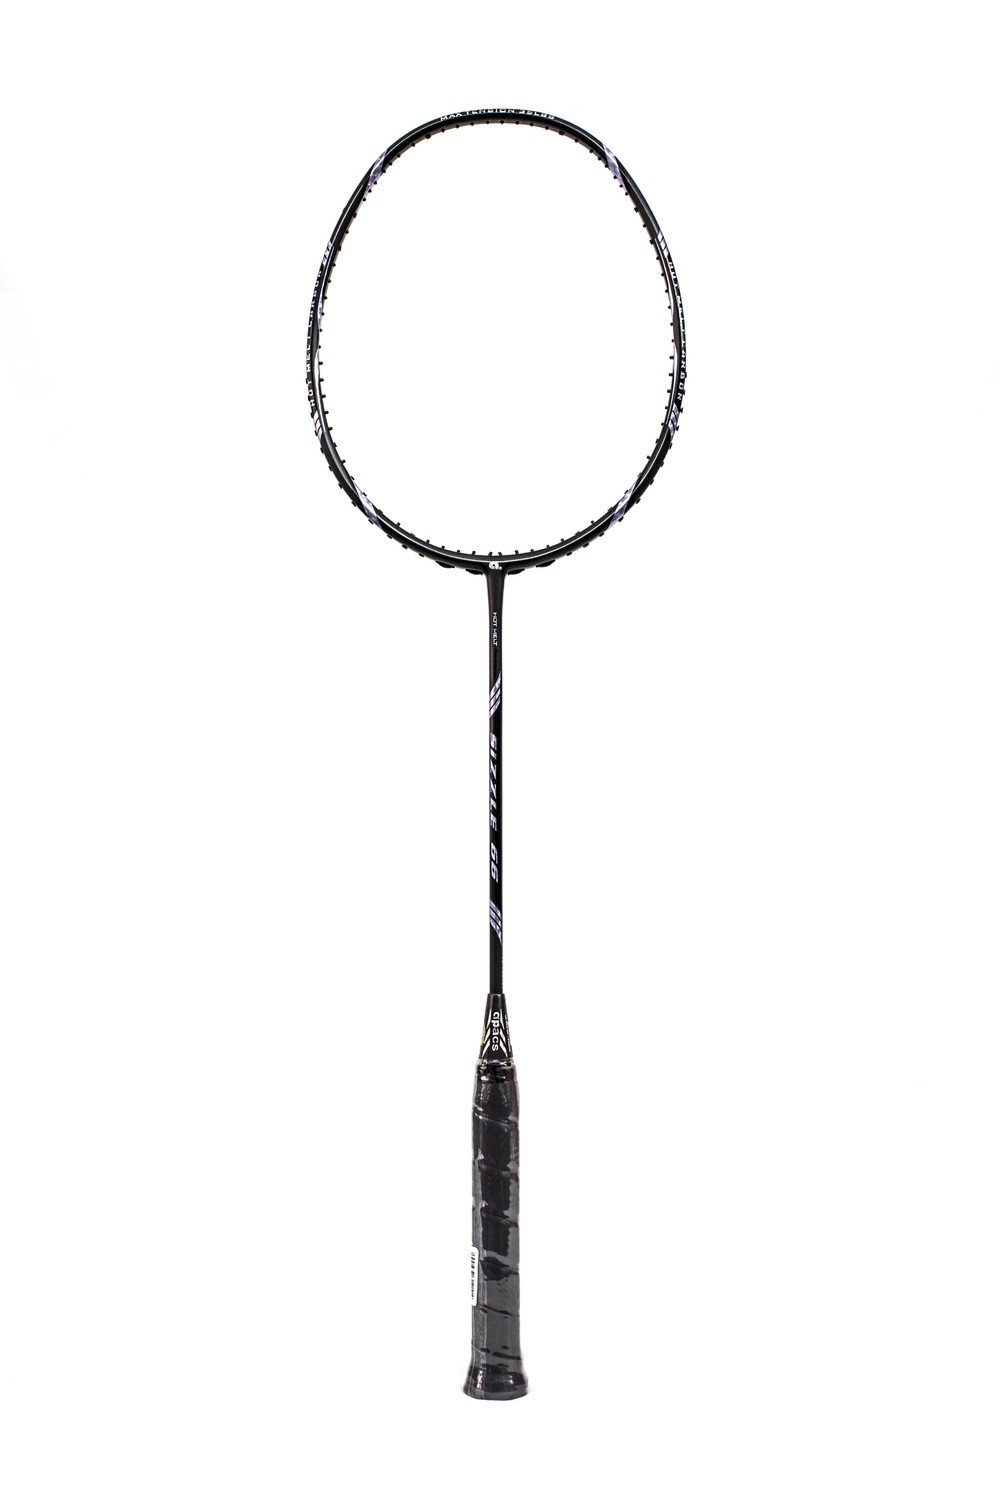 Apacs Sizzle 66 Badminton Racquet